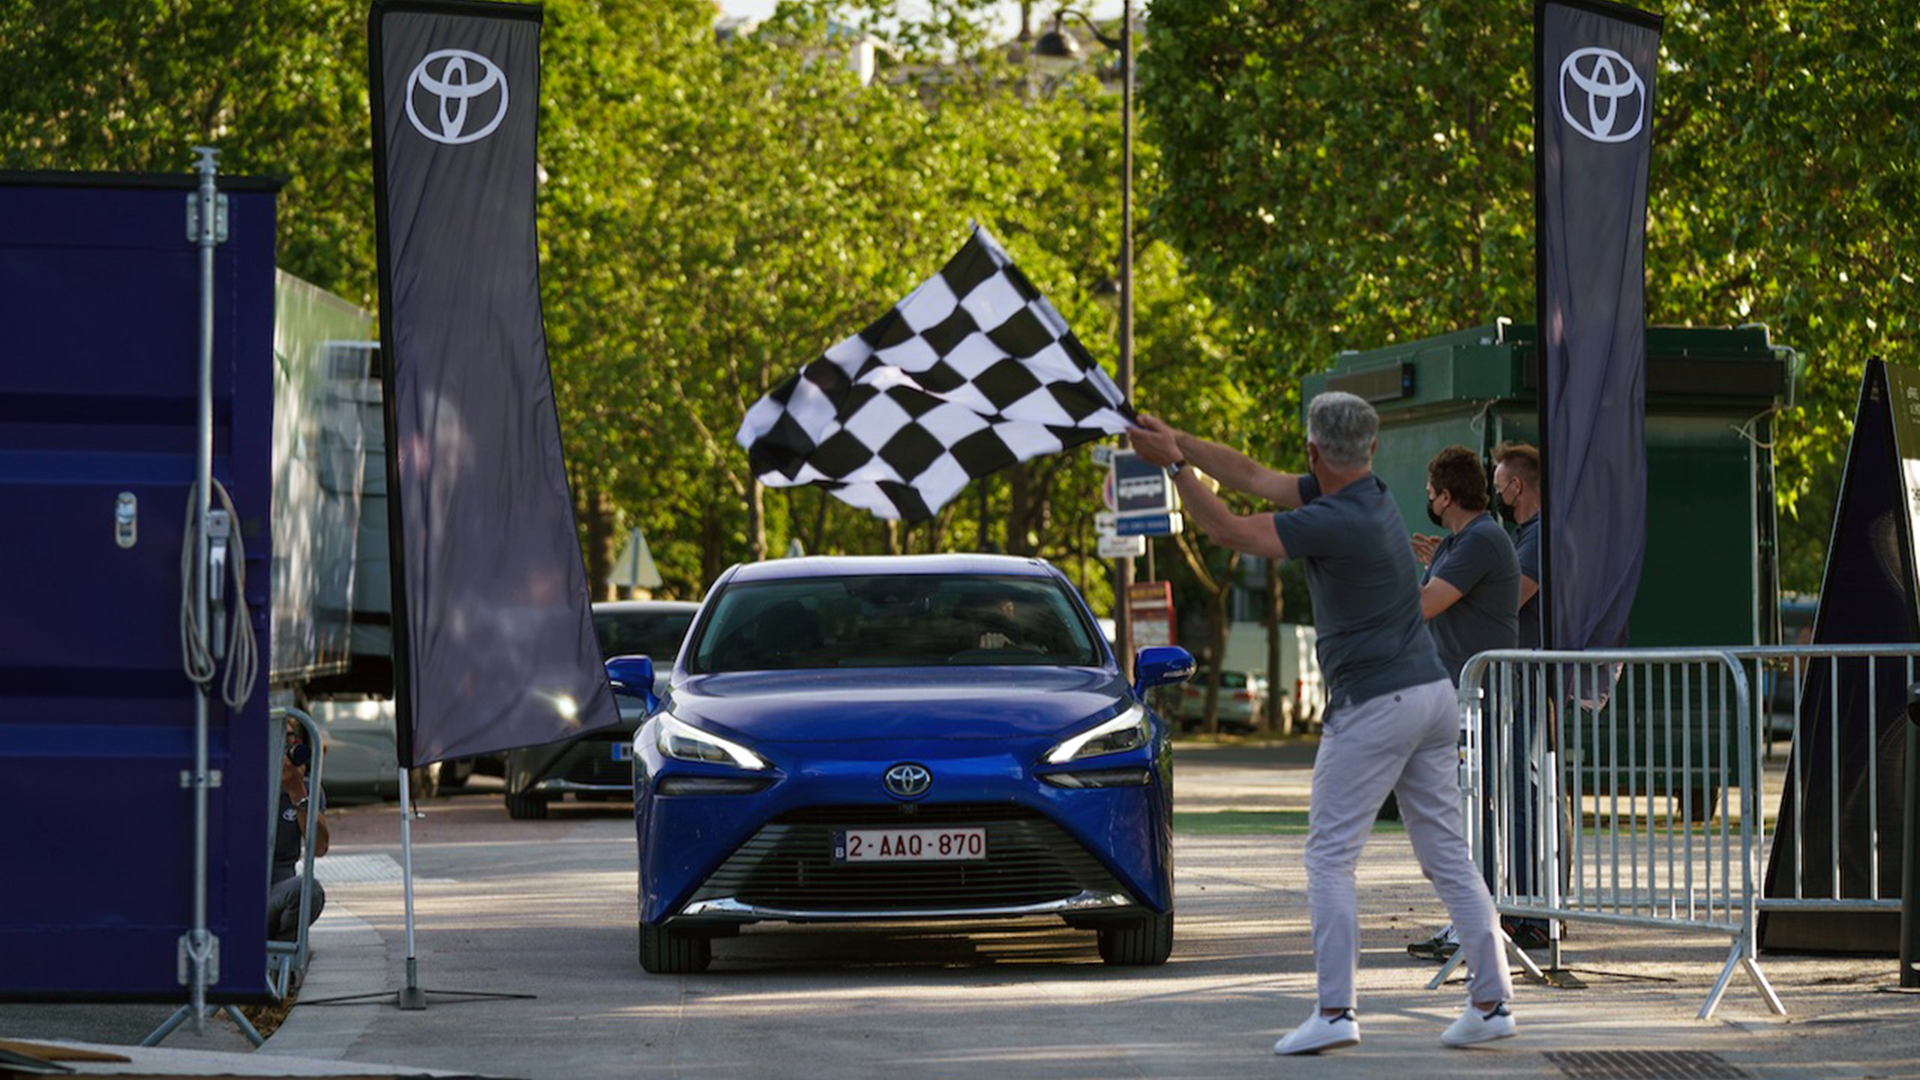 El Mirai cruza simbólicamente la bandera a cuadros que marca el récord mundial de autonomía con hidrógeno luego de recorrer 1.003 kilómetros con una sola carga (Foto Toyota)